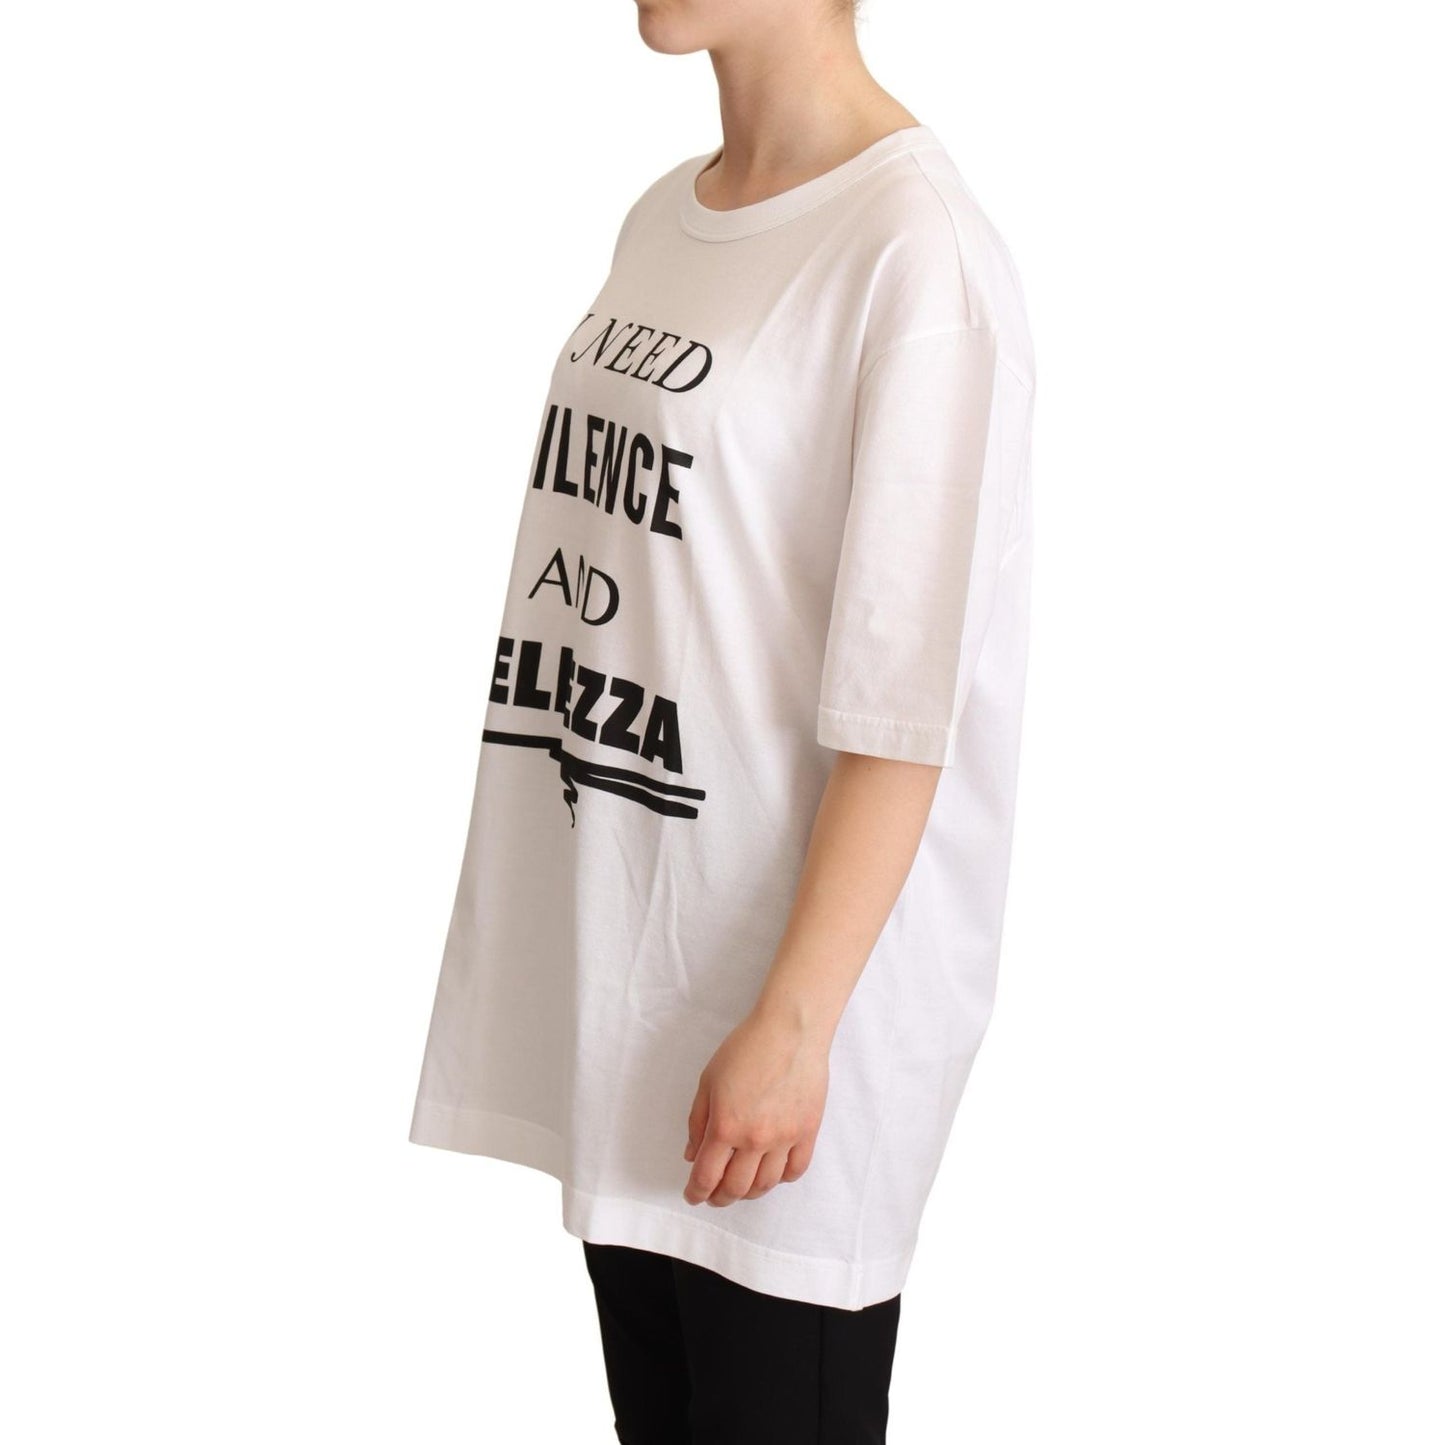 Dolce & Gabbana Elegant Motive Print Crewneck T-shirt WOMAN T-SHIRTS white-cotton-bellezza-motive-top-t-shirt